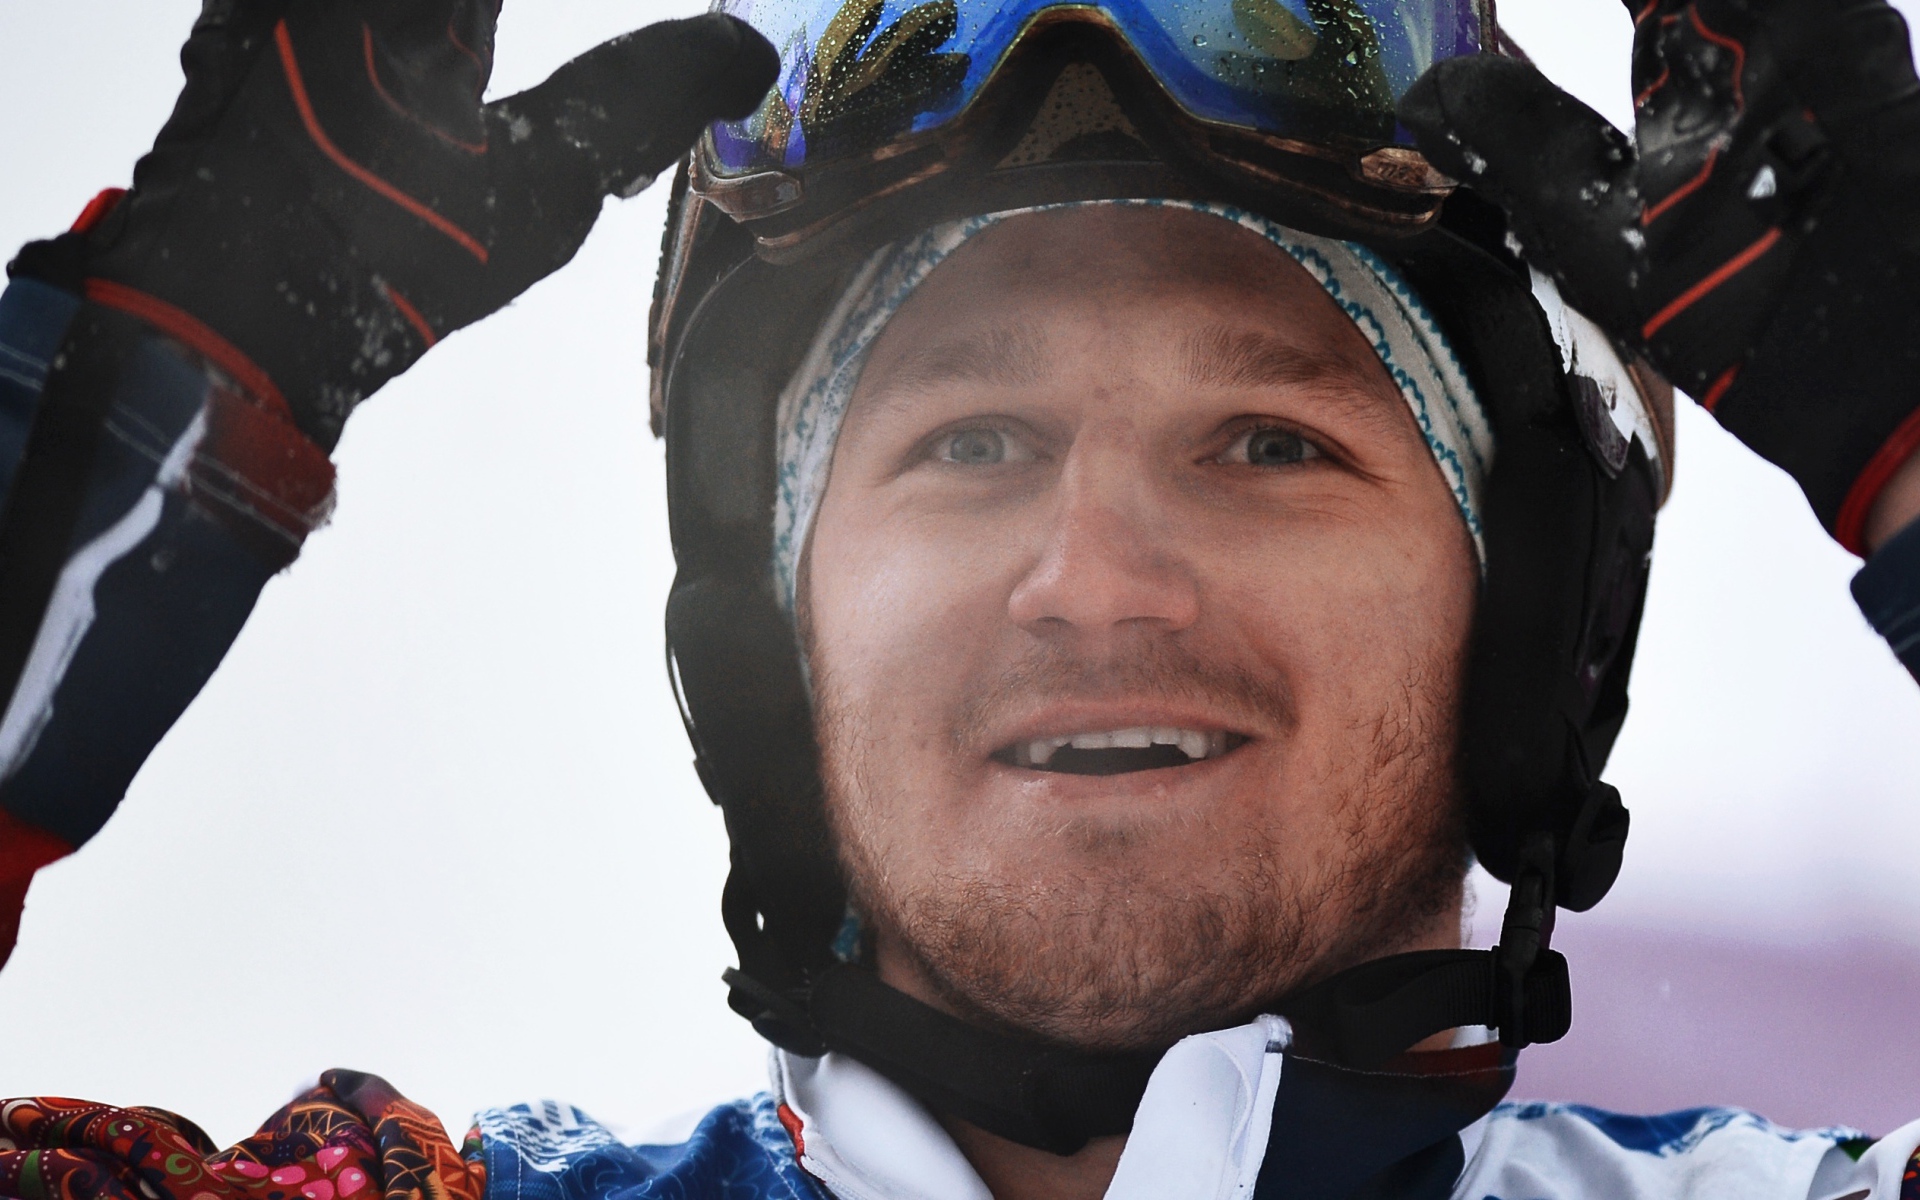 Обладатель серебряной медали в дисциплине сноуборд Николай Олюнин из России